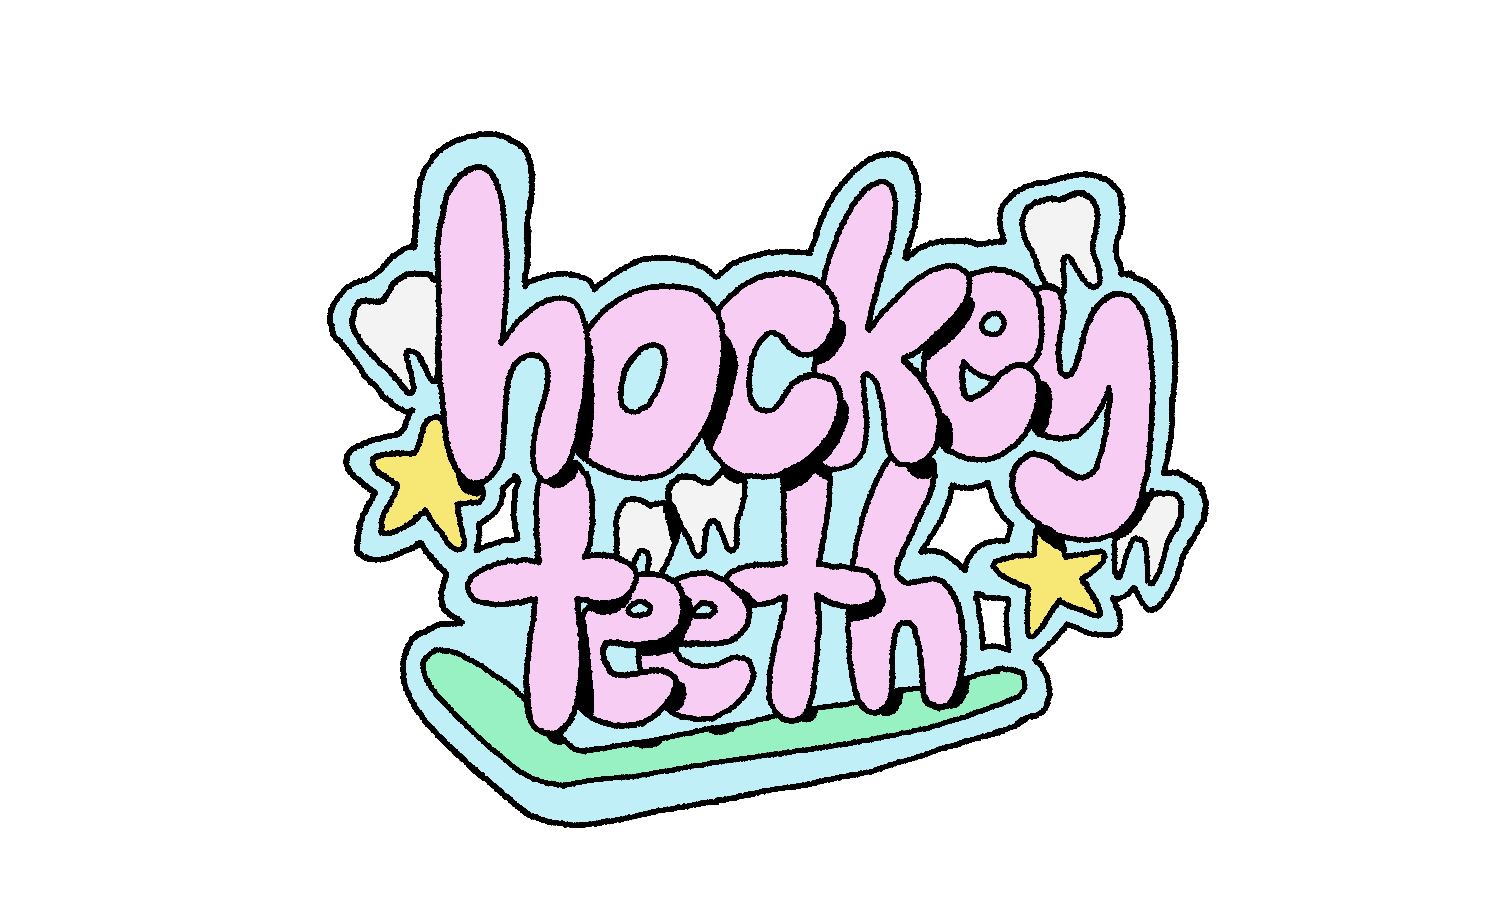 Hockey Teeth